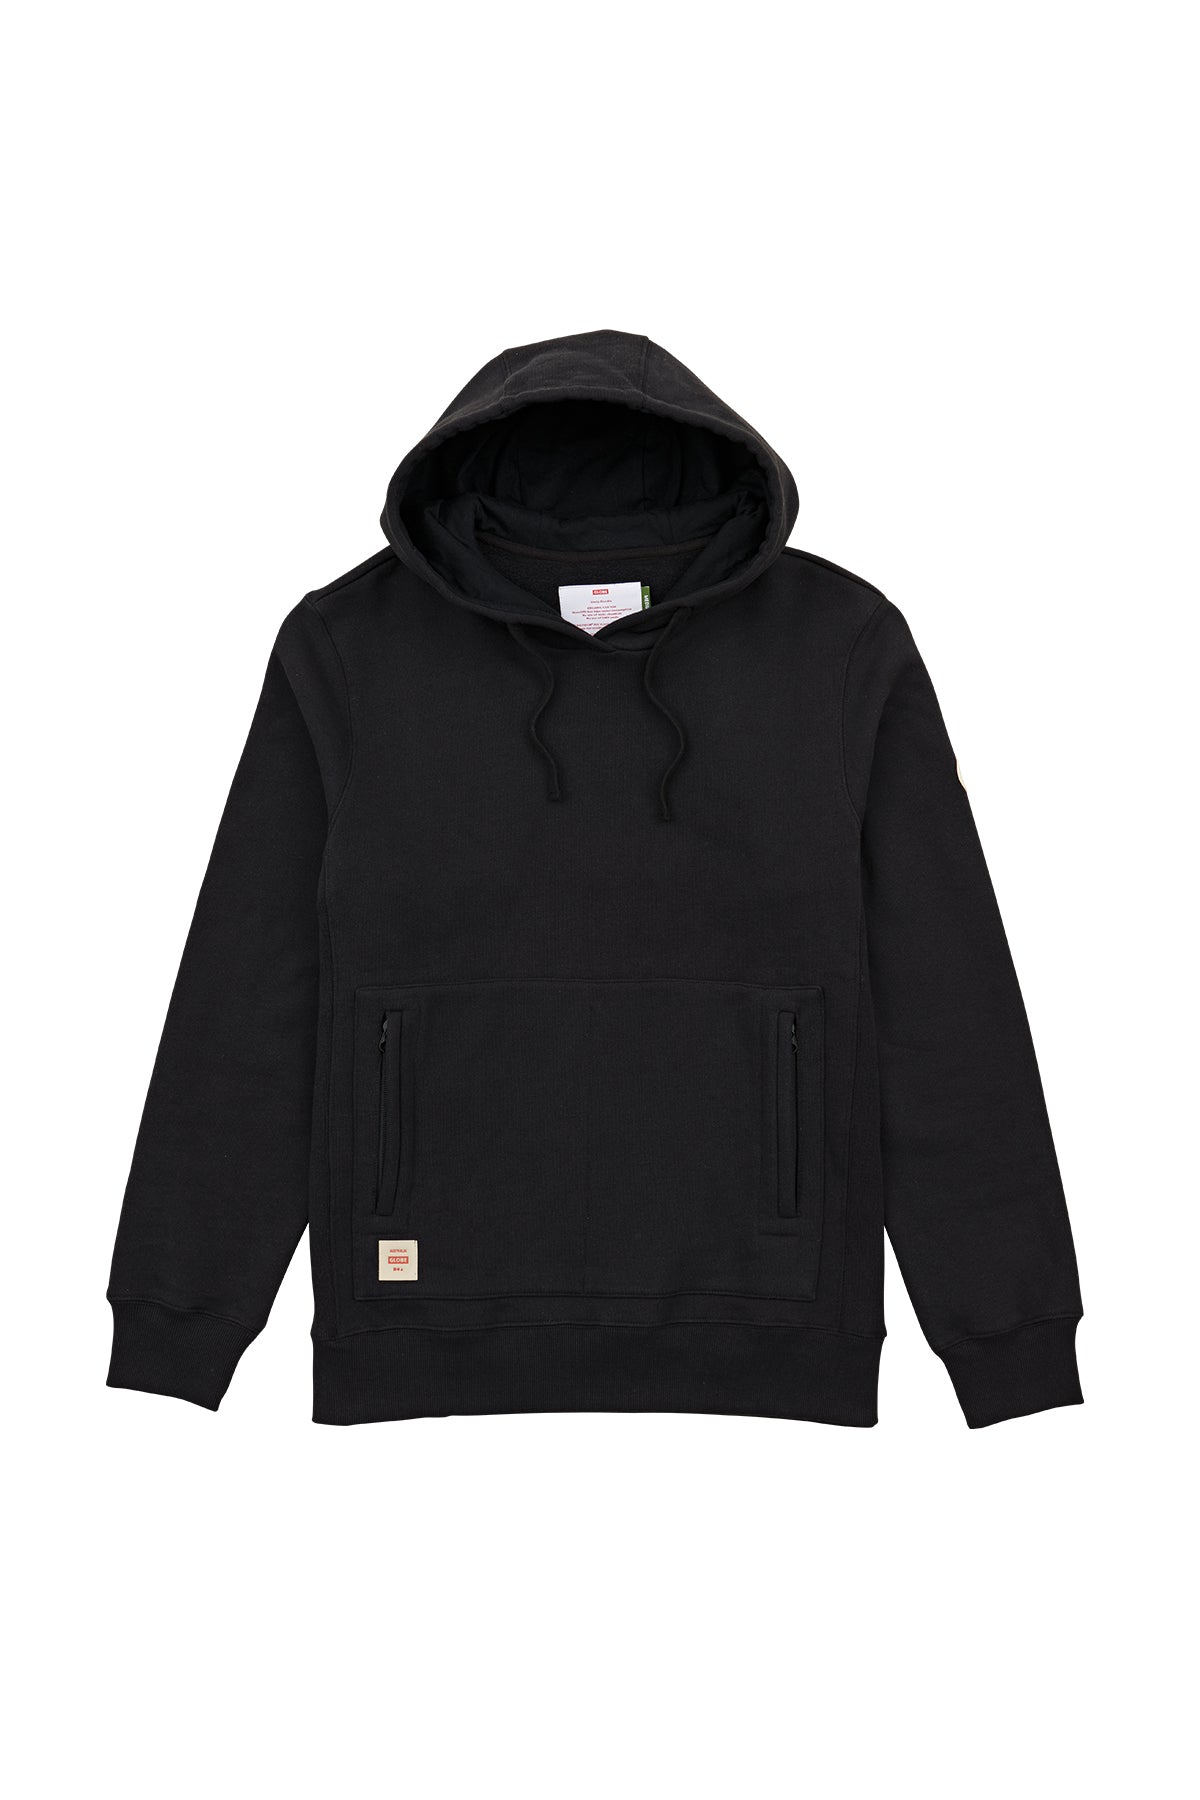 Black Globe hoodie